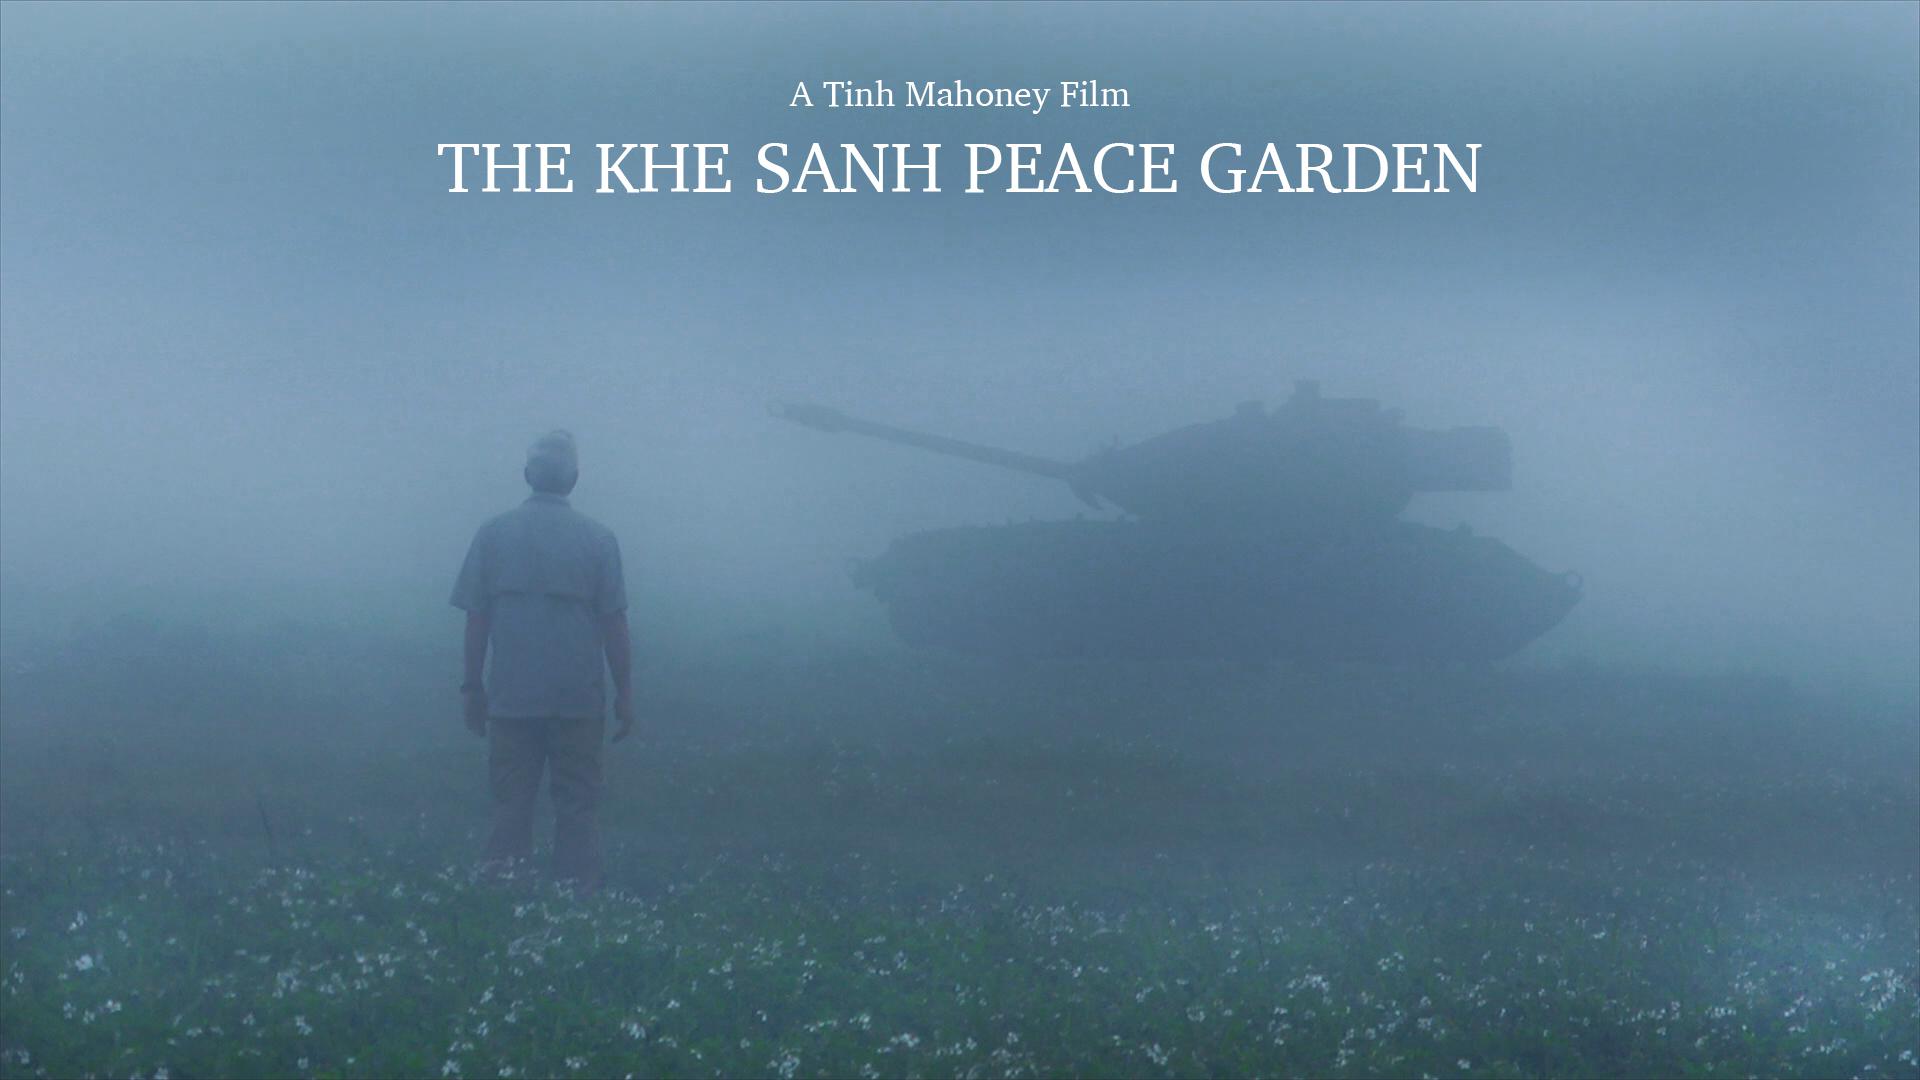 The Khe Sanh Peace Garden